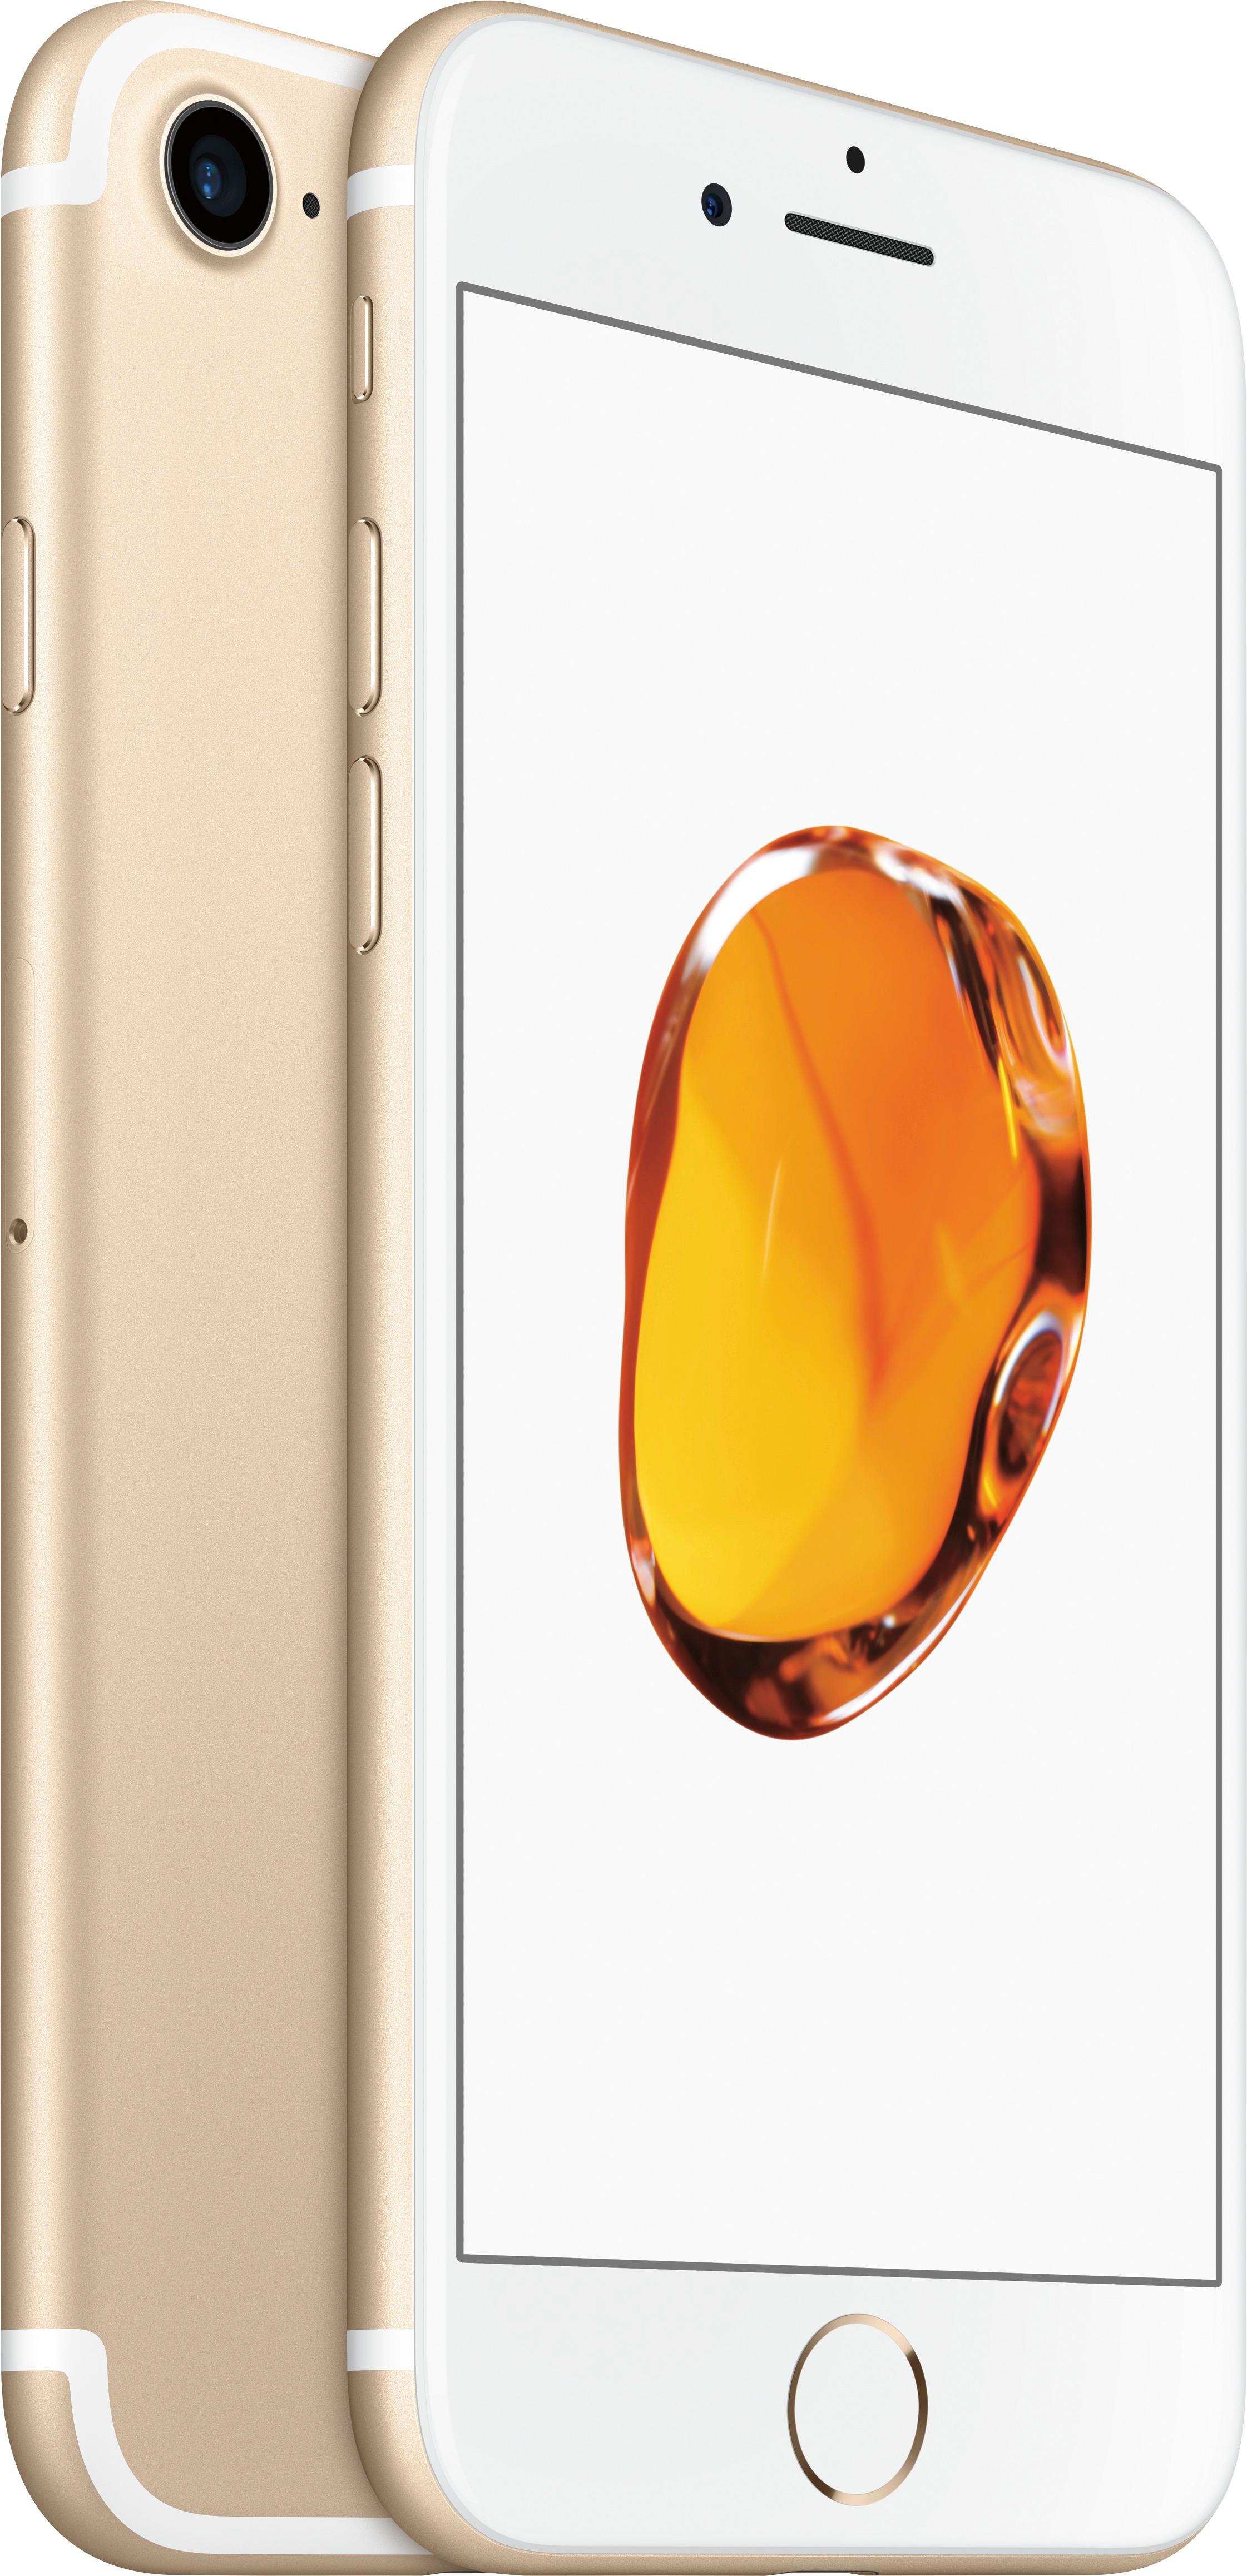 スマートフォン/携帯電話 スマートフォン本体 Best Buy: Apple iPhone 7 128GB Gold (AT&T) MN8N2LL/A